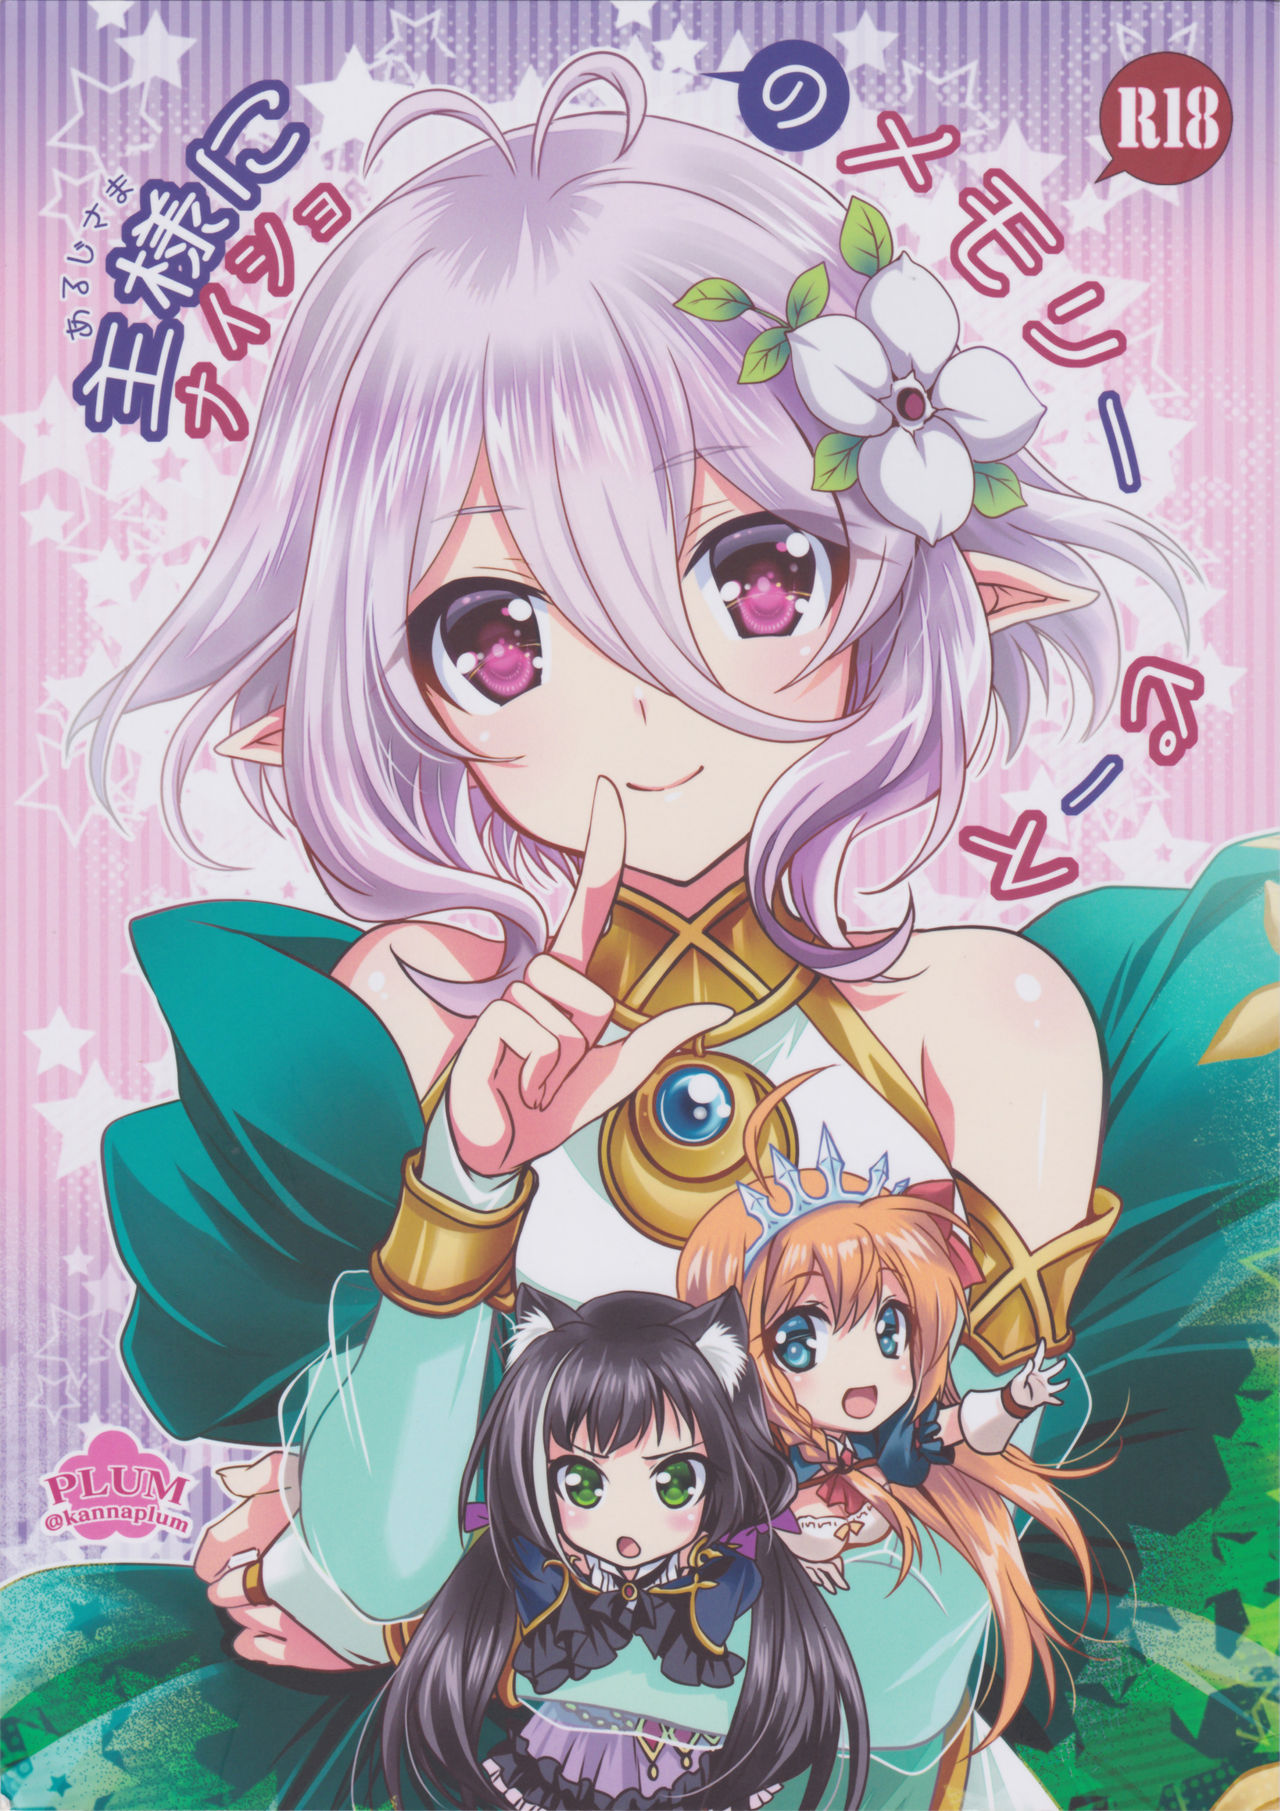 (SC2019 Summer) [PLUM (Kanna)] Aruji-sama ni Naisho no Memory Piece (Princess Connect! Re:Dive) page 1 full